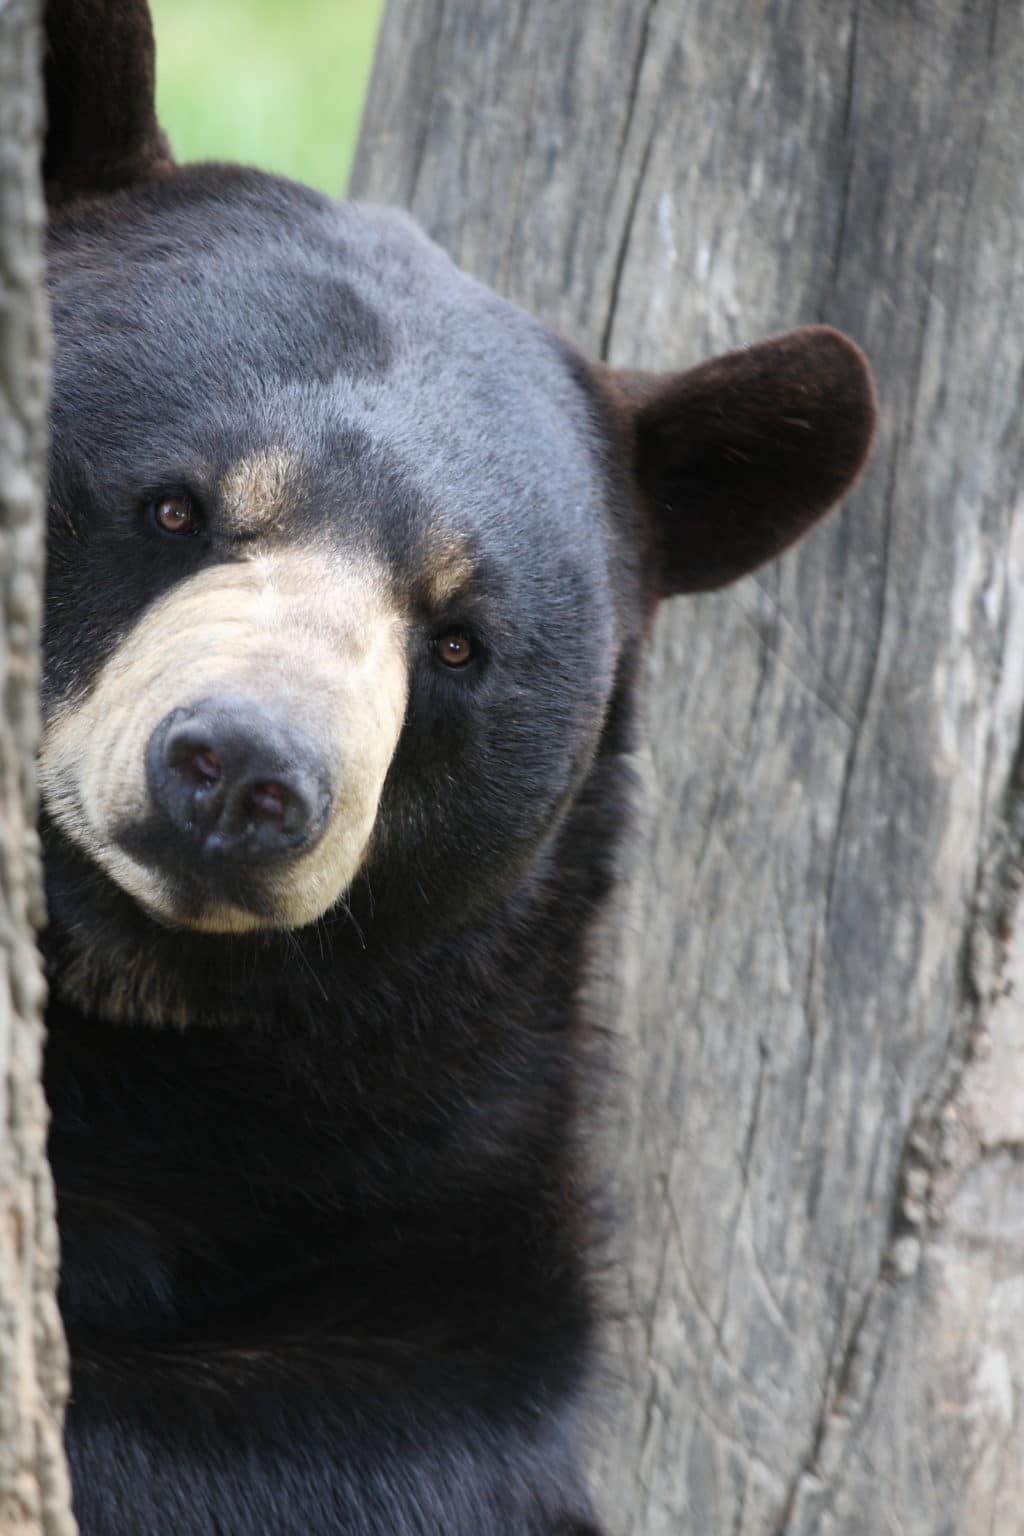 Black bear face peeking around tree